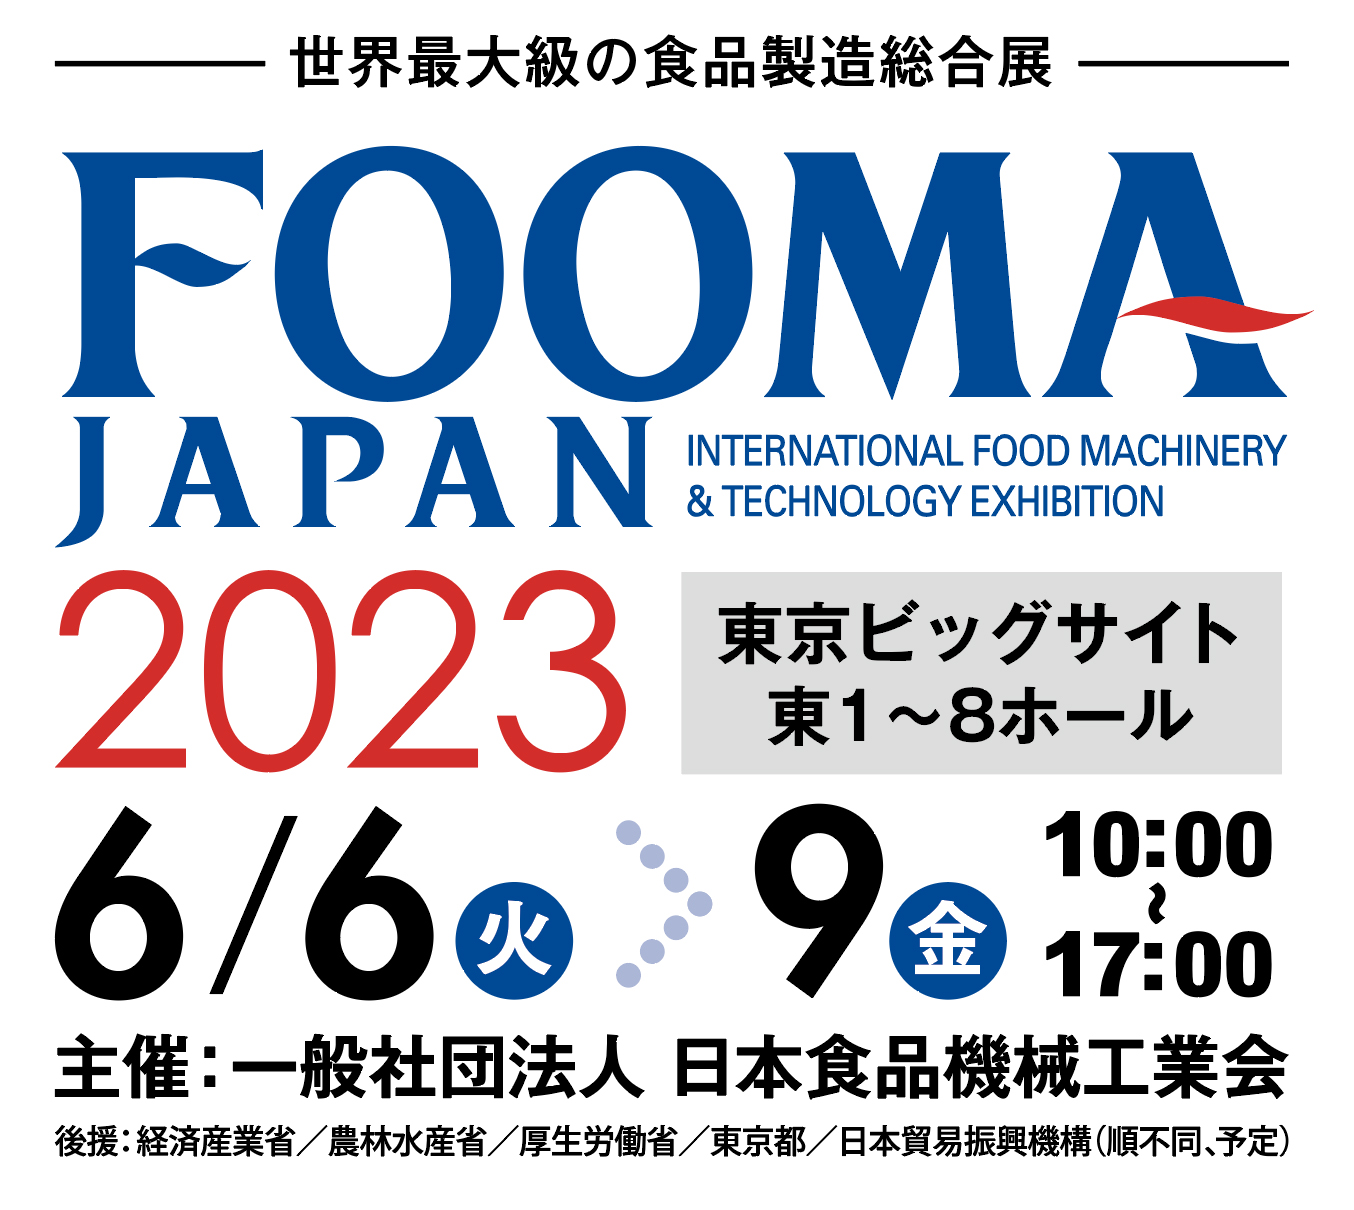 2023年6月6日～9日「FOOMA JAPAN 2023」 出展のお知らせ